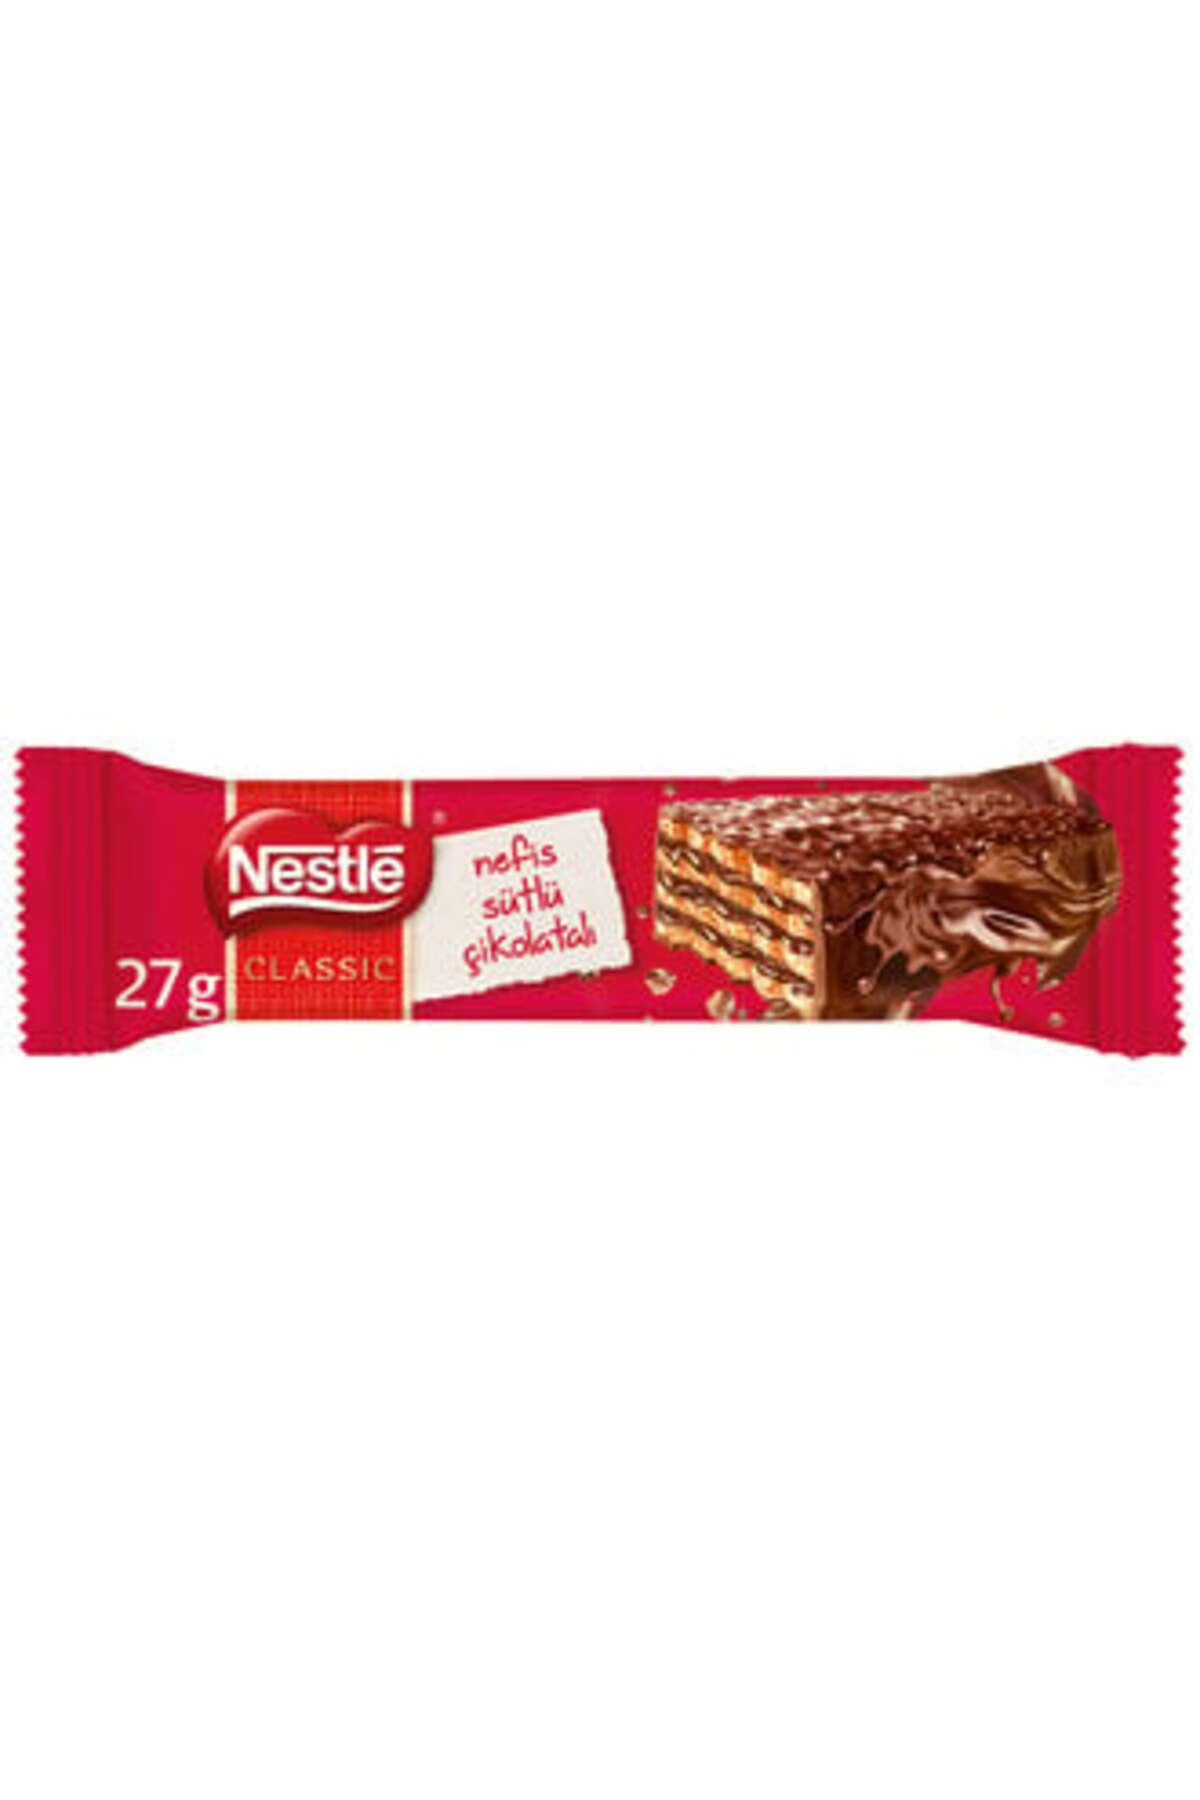 Nestle Nestlé Classic Sütlü Çikolatalı Çıtır Gofret 27 gr ( 12 ADET )